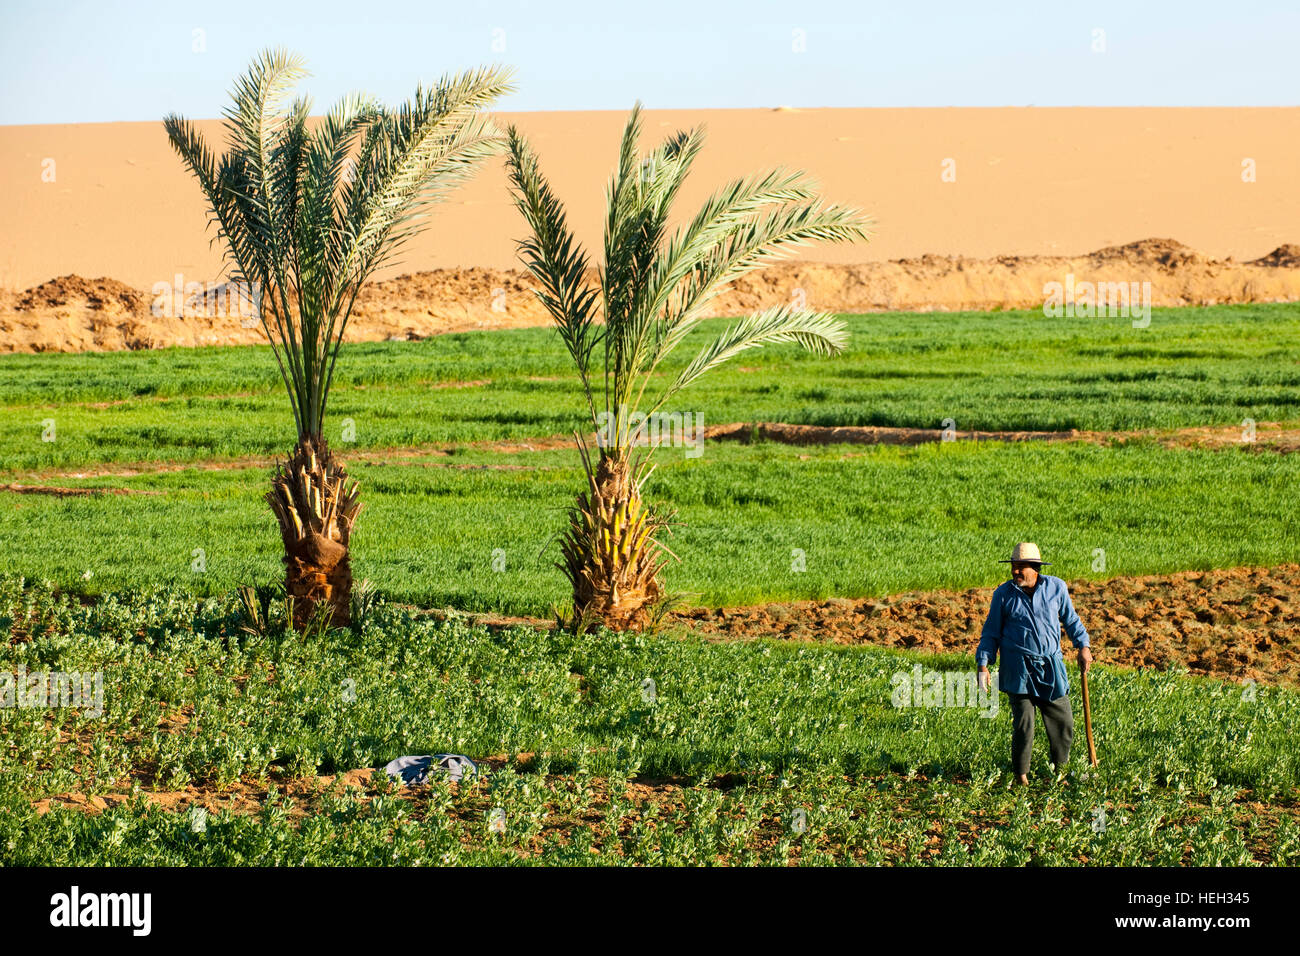 Aegypten, Oase Dakhla, Landwirtschaft am Rand der Wüste Stock Photo - Alamy